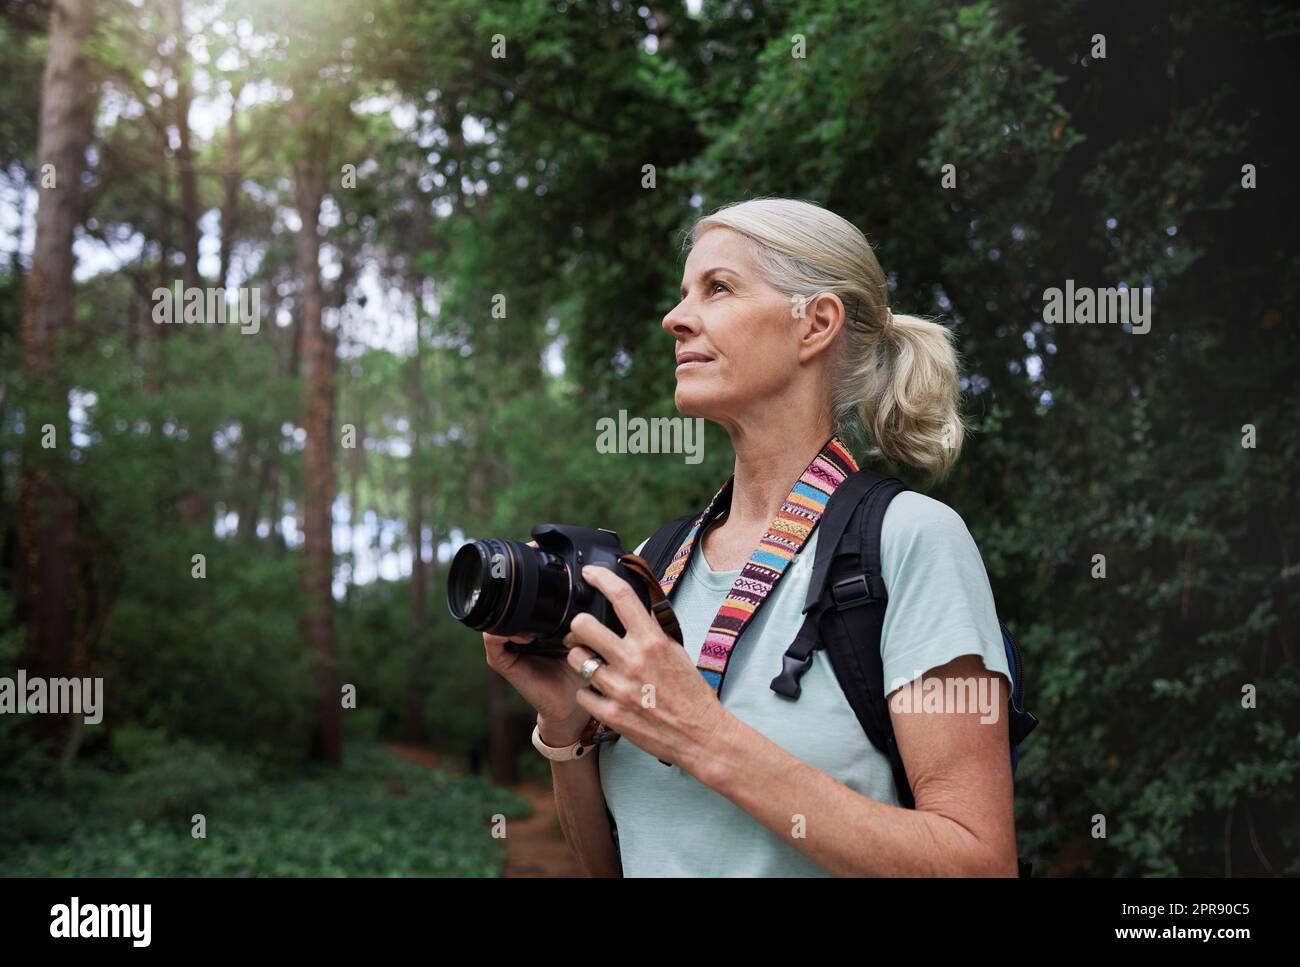 Eine reife weiße Frau, die beim Wandern Fotos mit der Kamera macht. Seniorin, die mit ihrer drahtlosen Digitalkamera Fotos in der Natur bei einer Wanderung im Freien macht Stockfoto